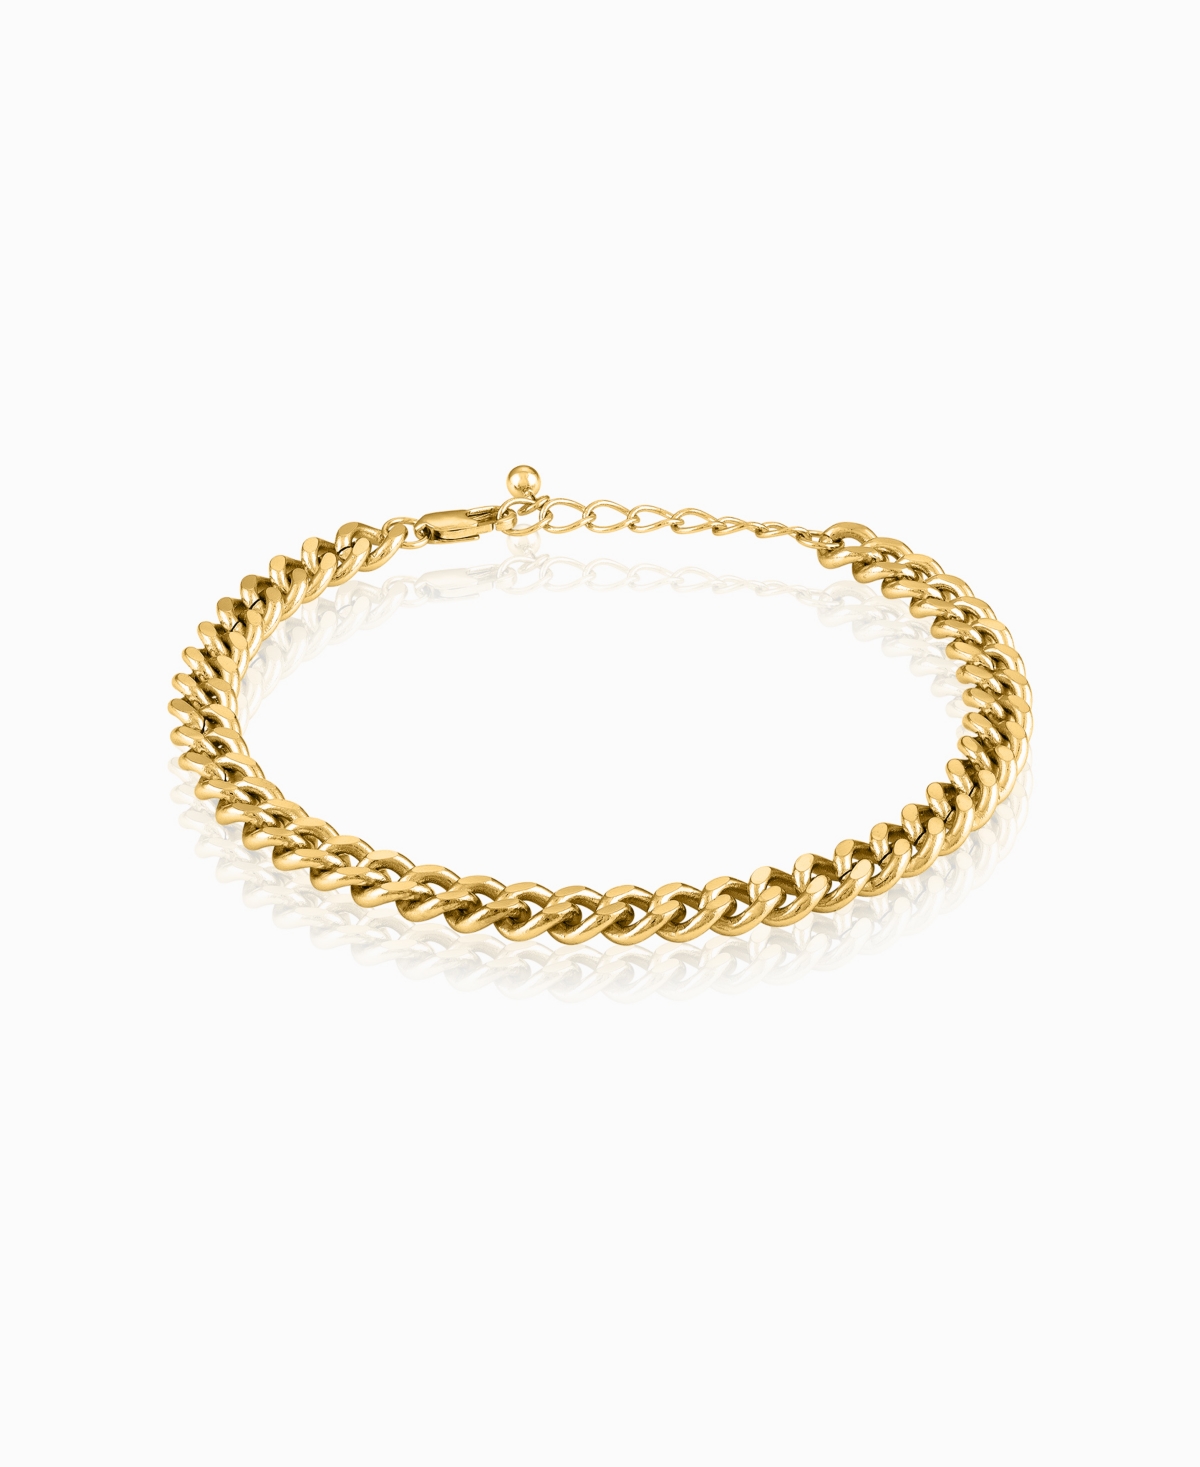 Cuban Link Collection Bracelet - Gold Tone